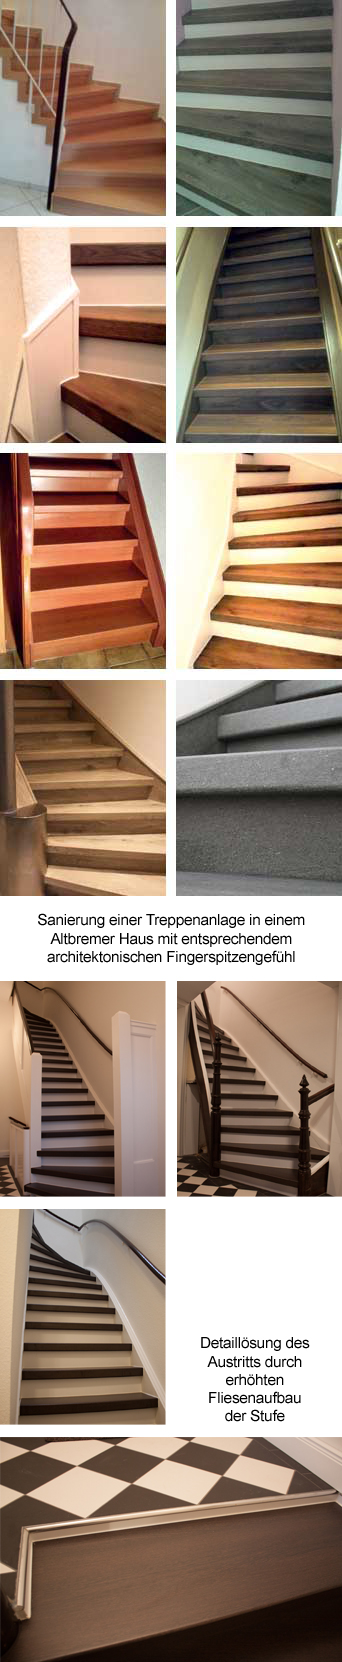 Fotos von Treppensanierungen in Altbauten und Neubauten